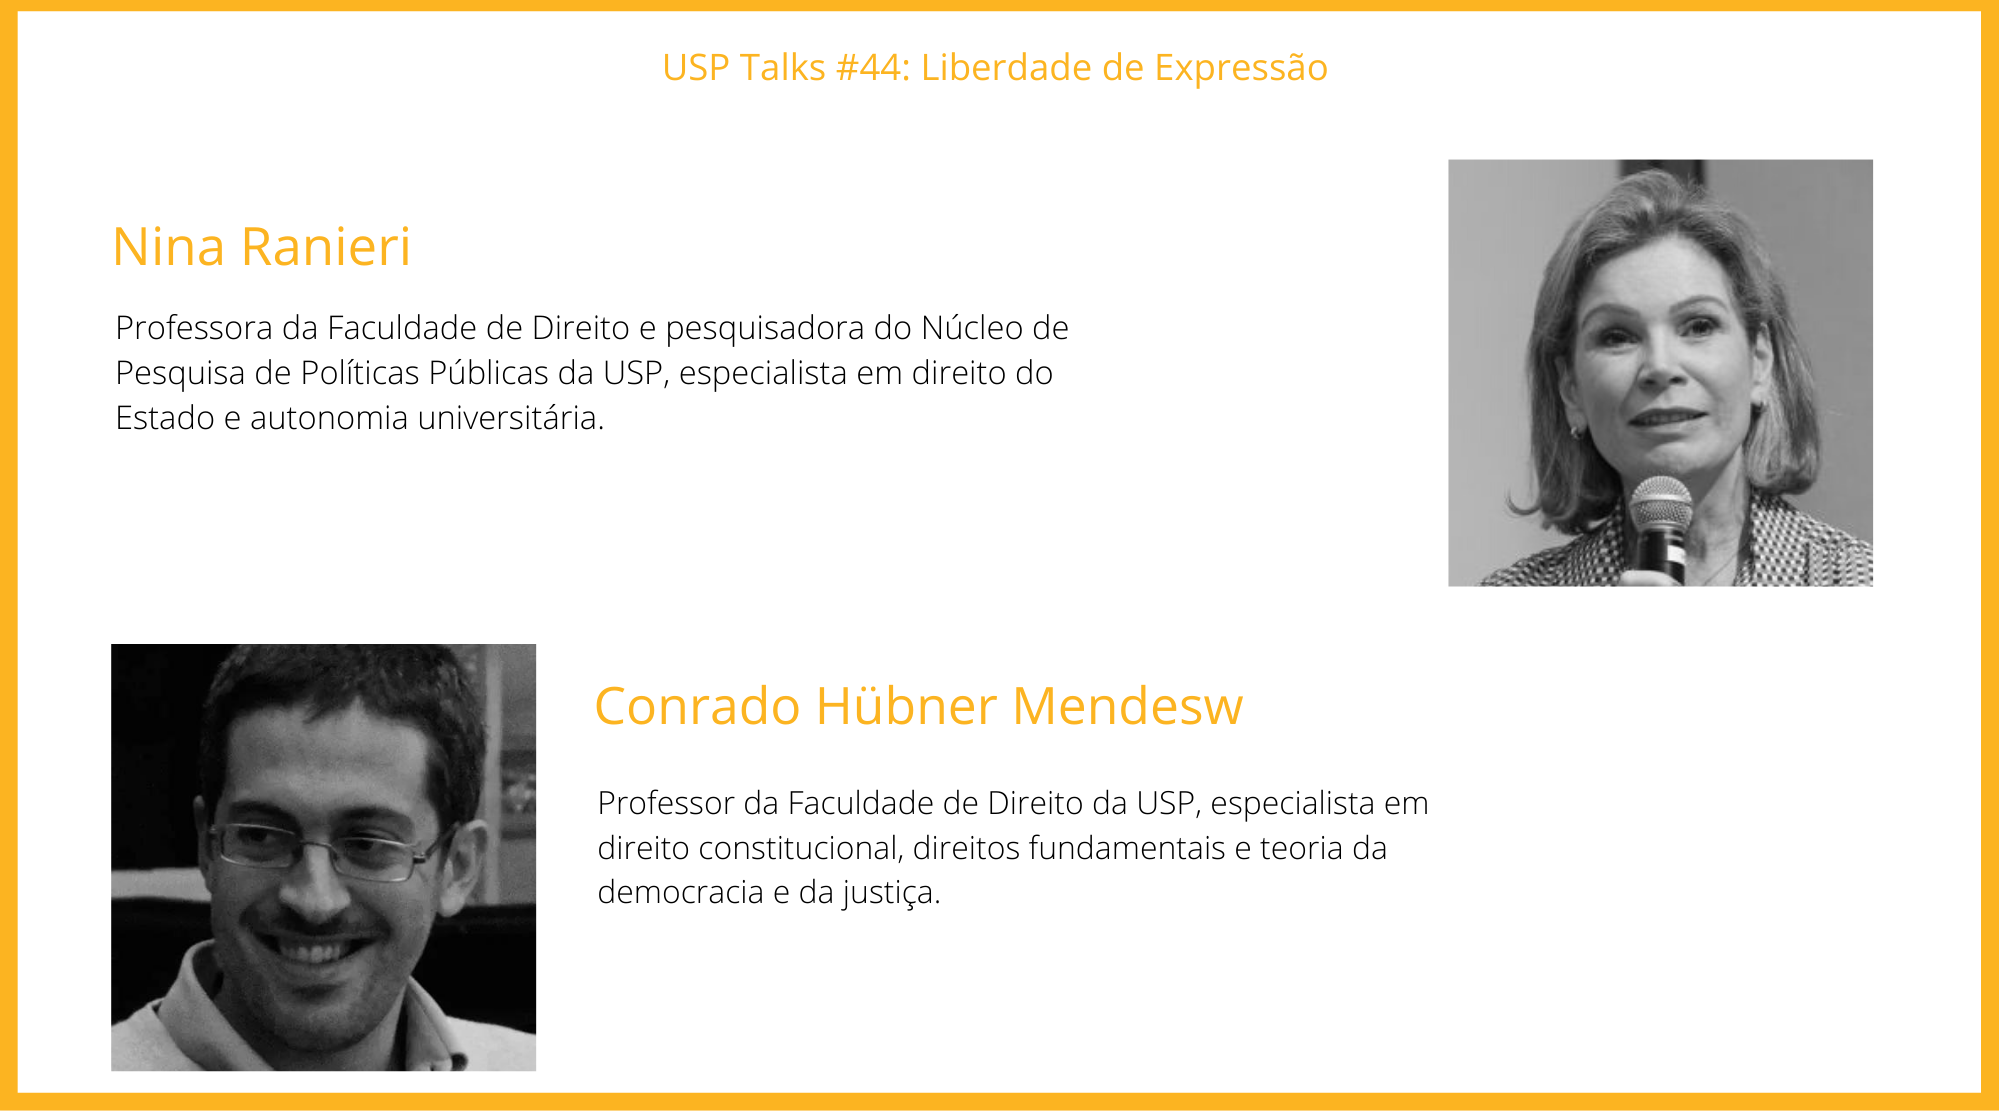 palestrantes-usp-talks-44-45-3